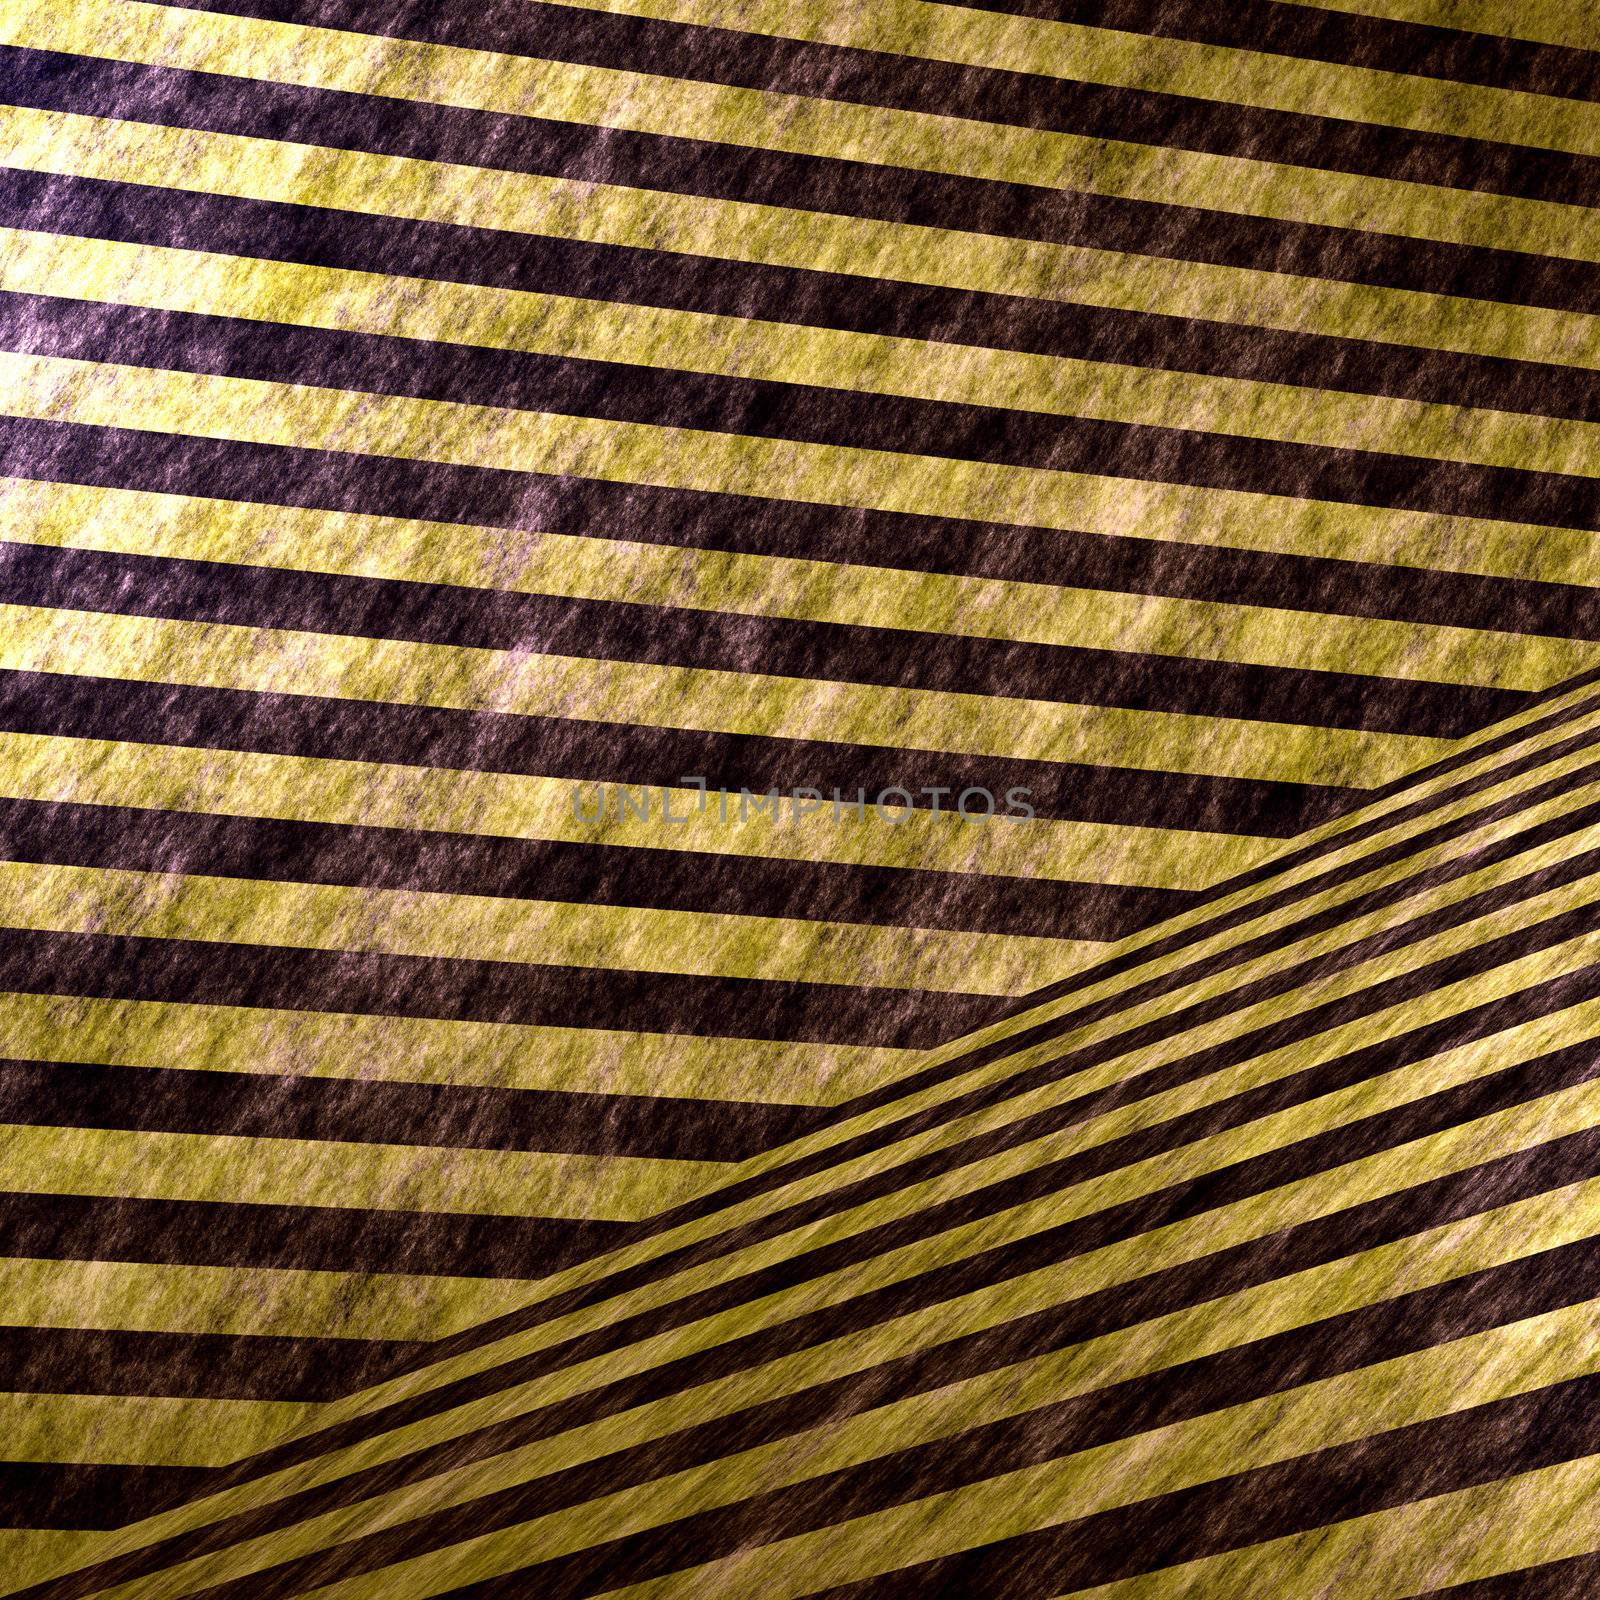 3D Hazard Stripe Interior by graficallyminded